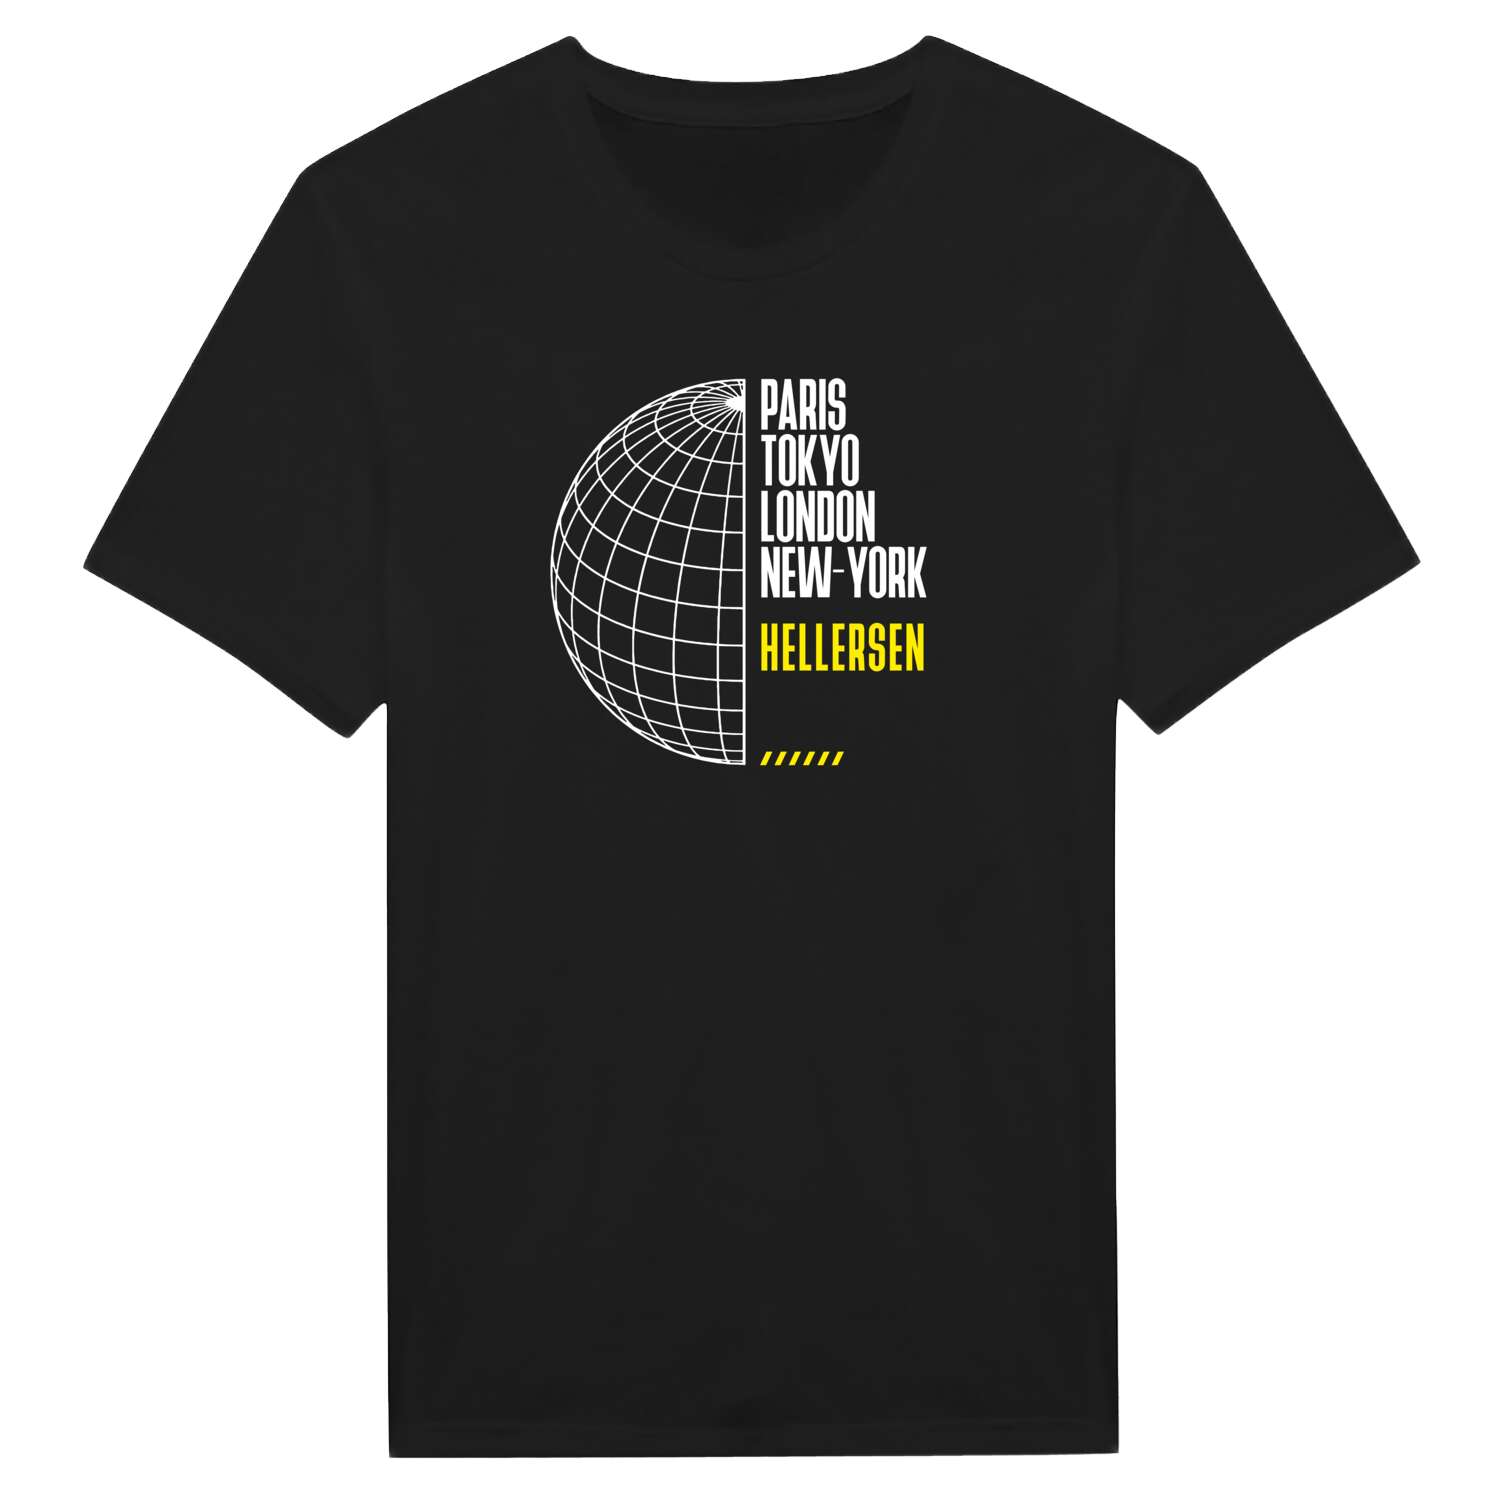 Hellersen T-Shirt »Paris Tokyo London«